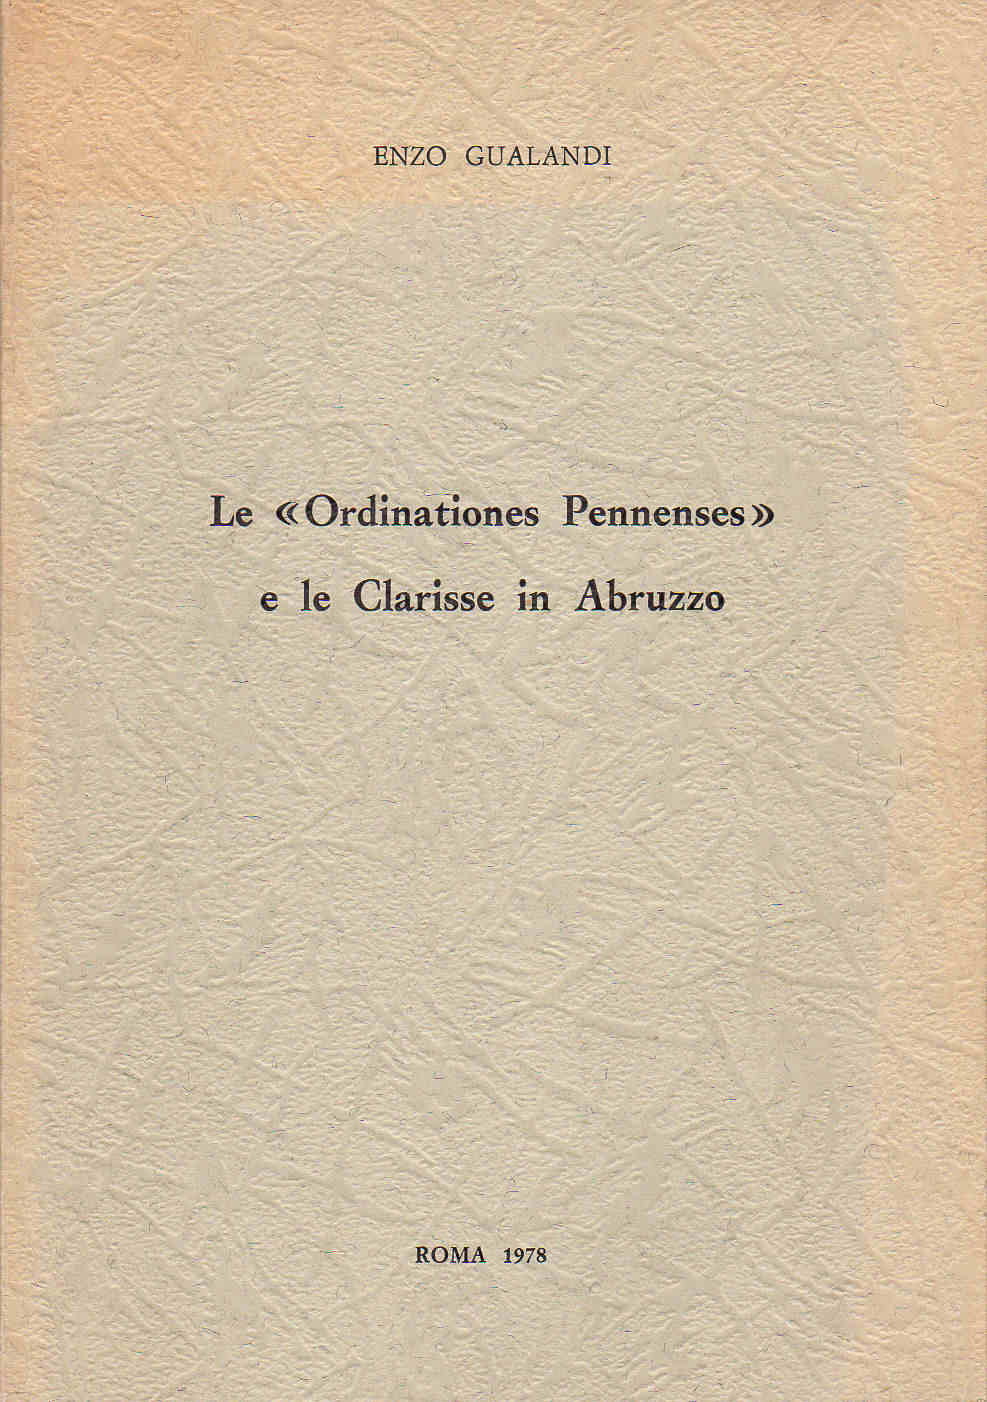 1976 - Le Ordinationes Pennenses e le Clarisse in Abruzzo